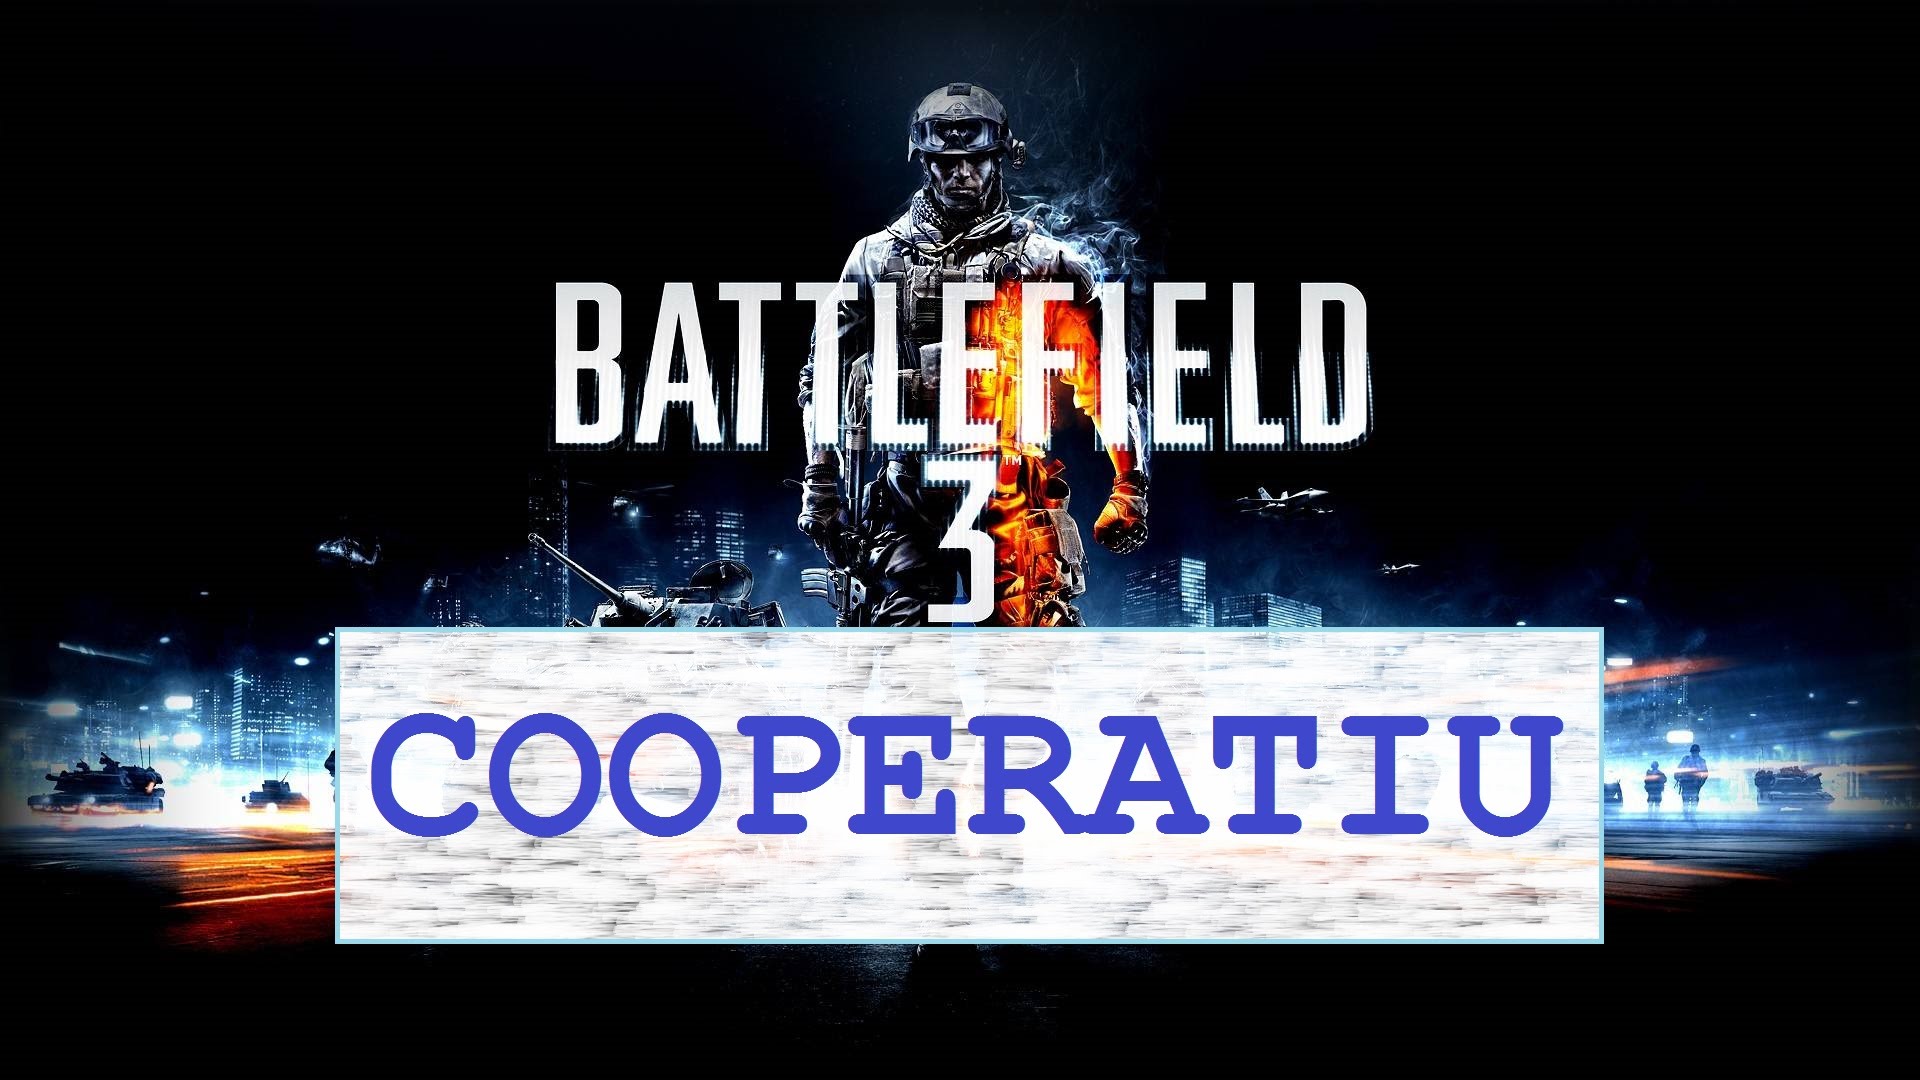 Battlefield 3 - Cooperatiu - 2a Missió de Pere J. Pastor